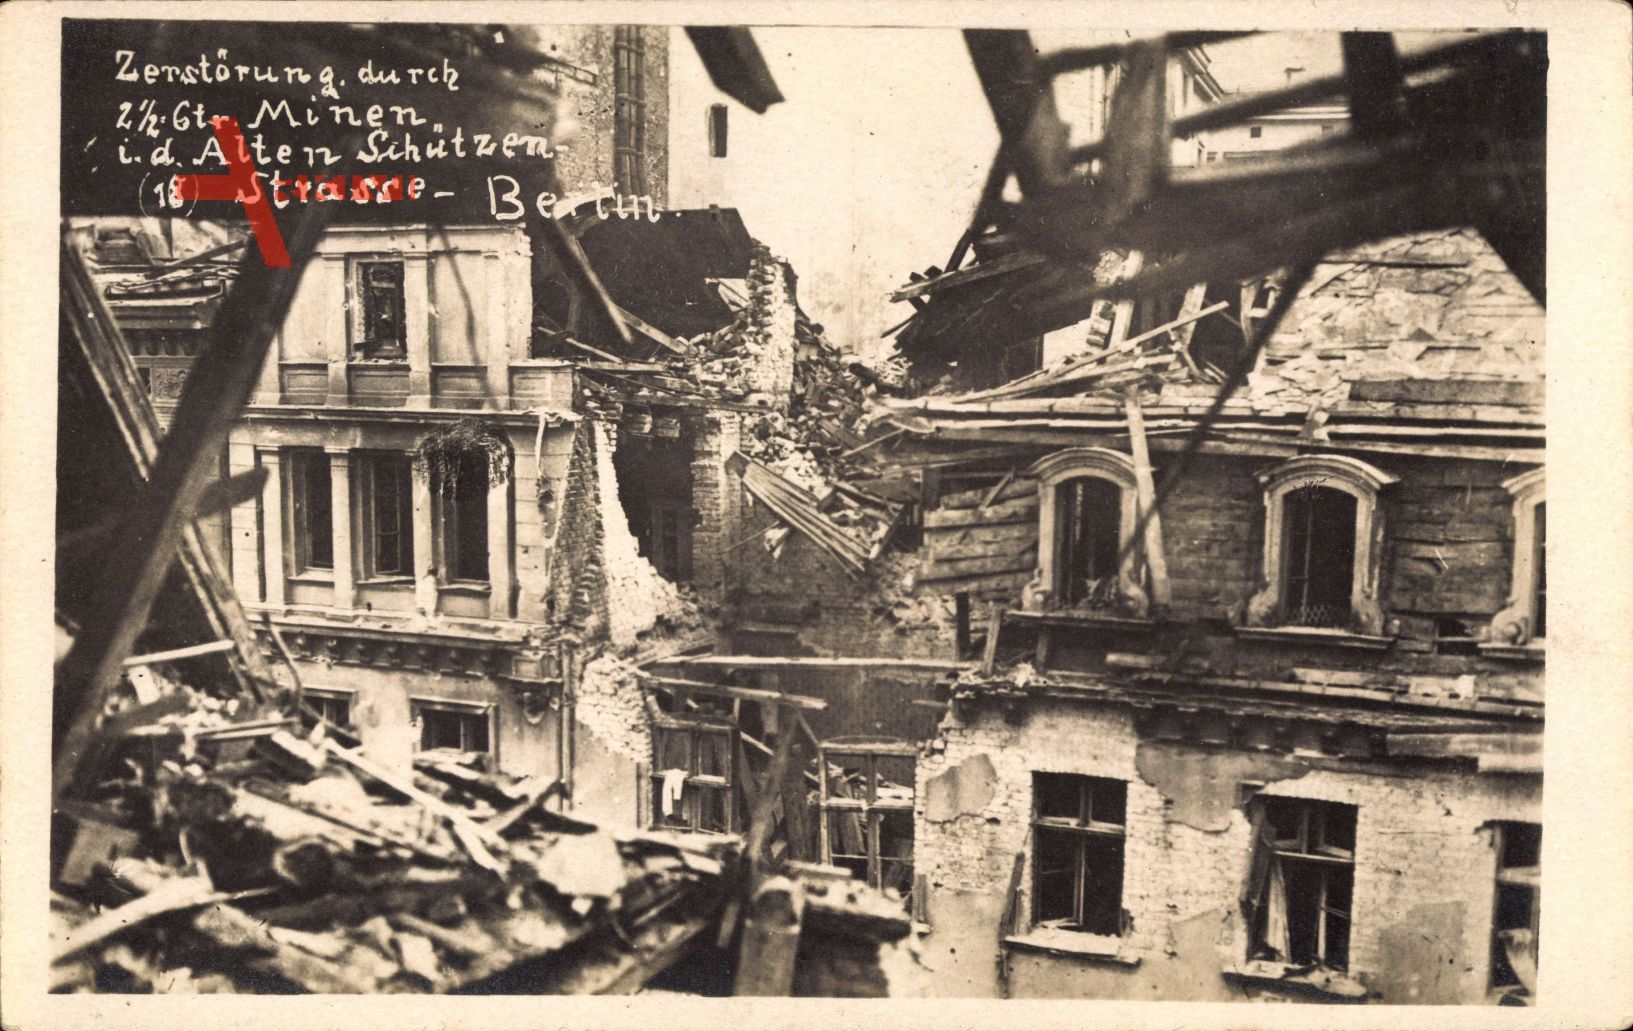 Berlin, Zerstörung durch Mine, Alte Schützenstraße, Märzkämpfe 1919